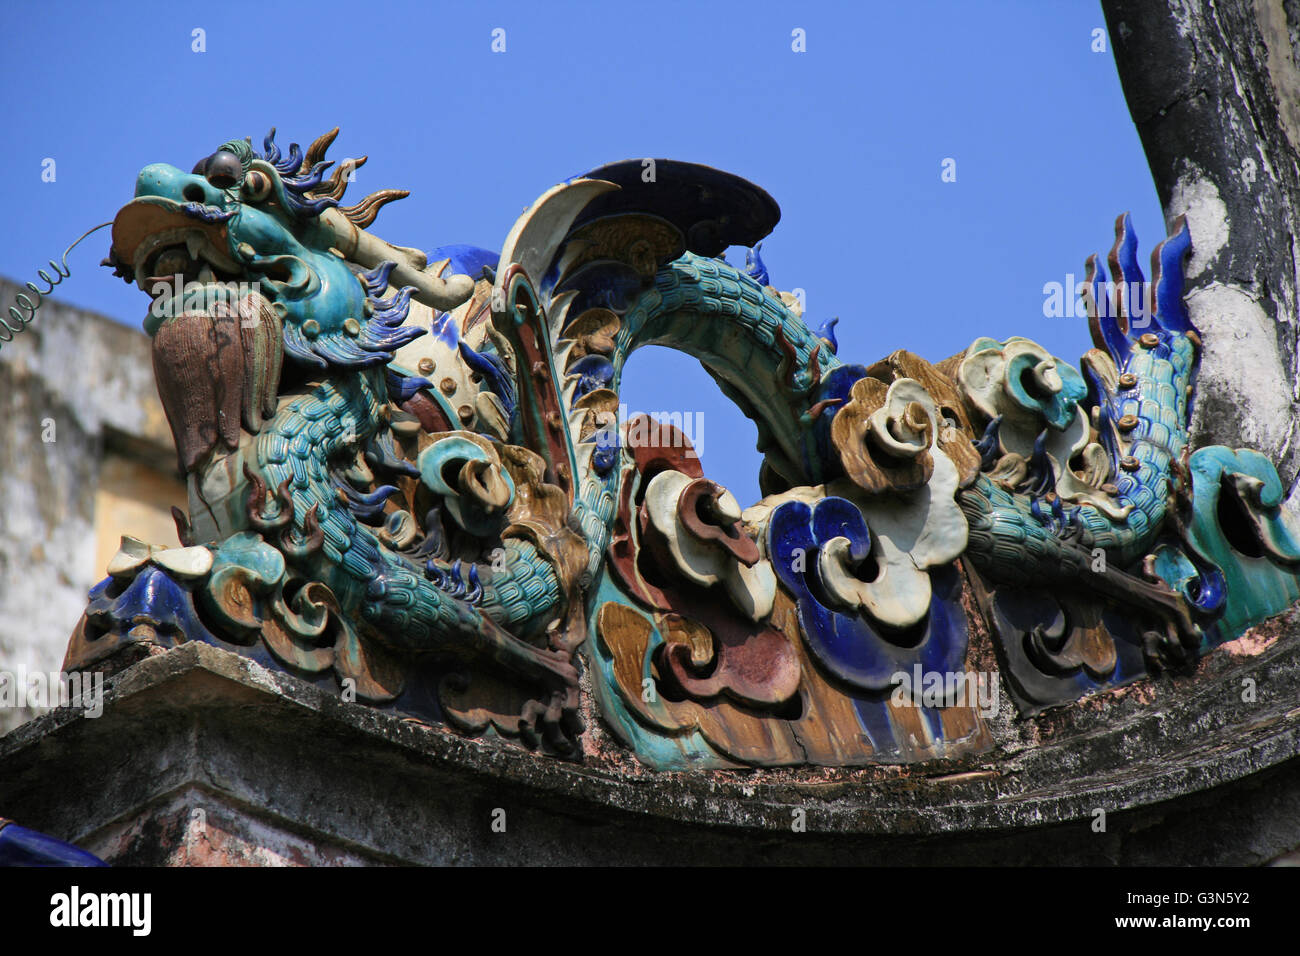 Eine Keramik Statue repräsentieren einen Drachen auf dem Dach des Thien Hau-Tempel in Saigon. Stockfoto